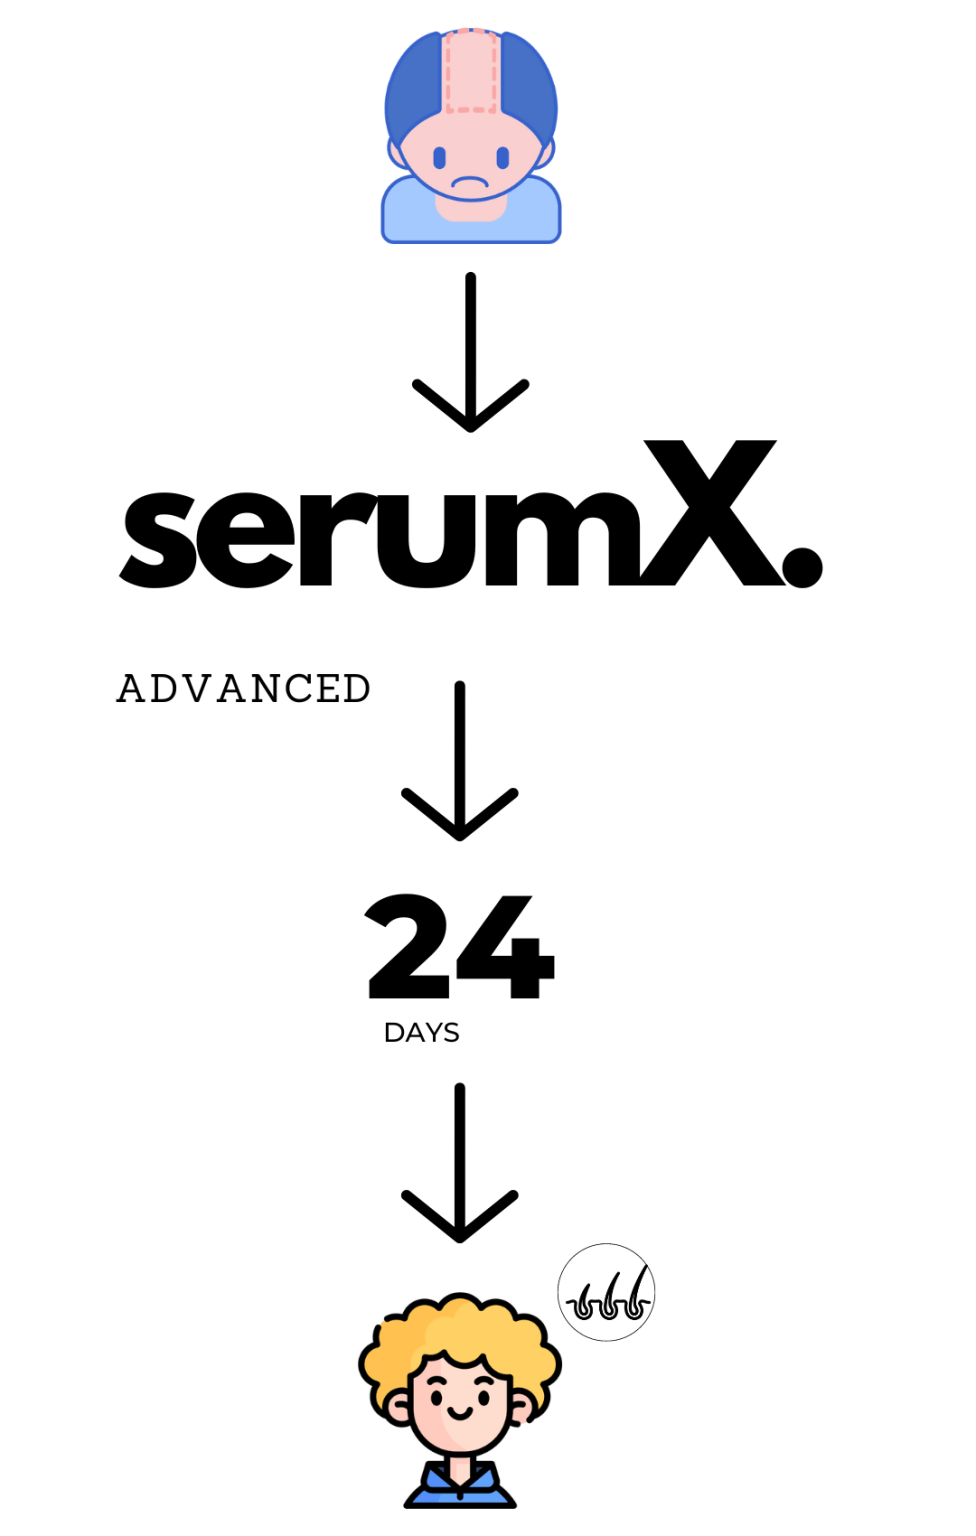 SerumX benefits